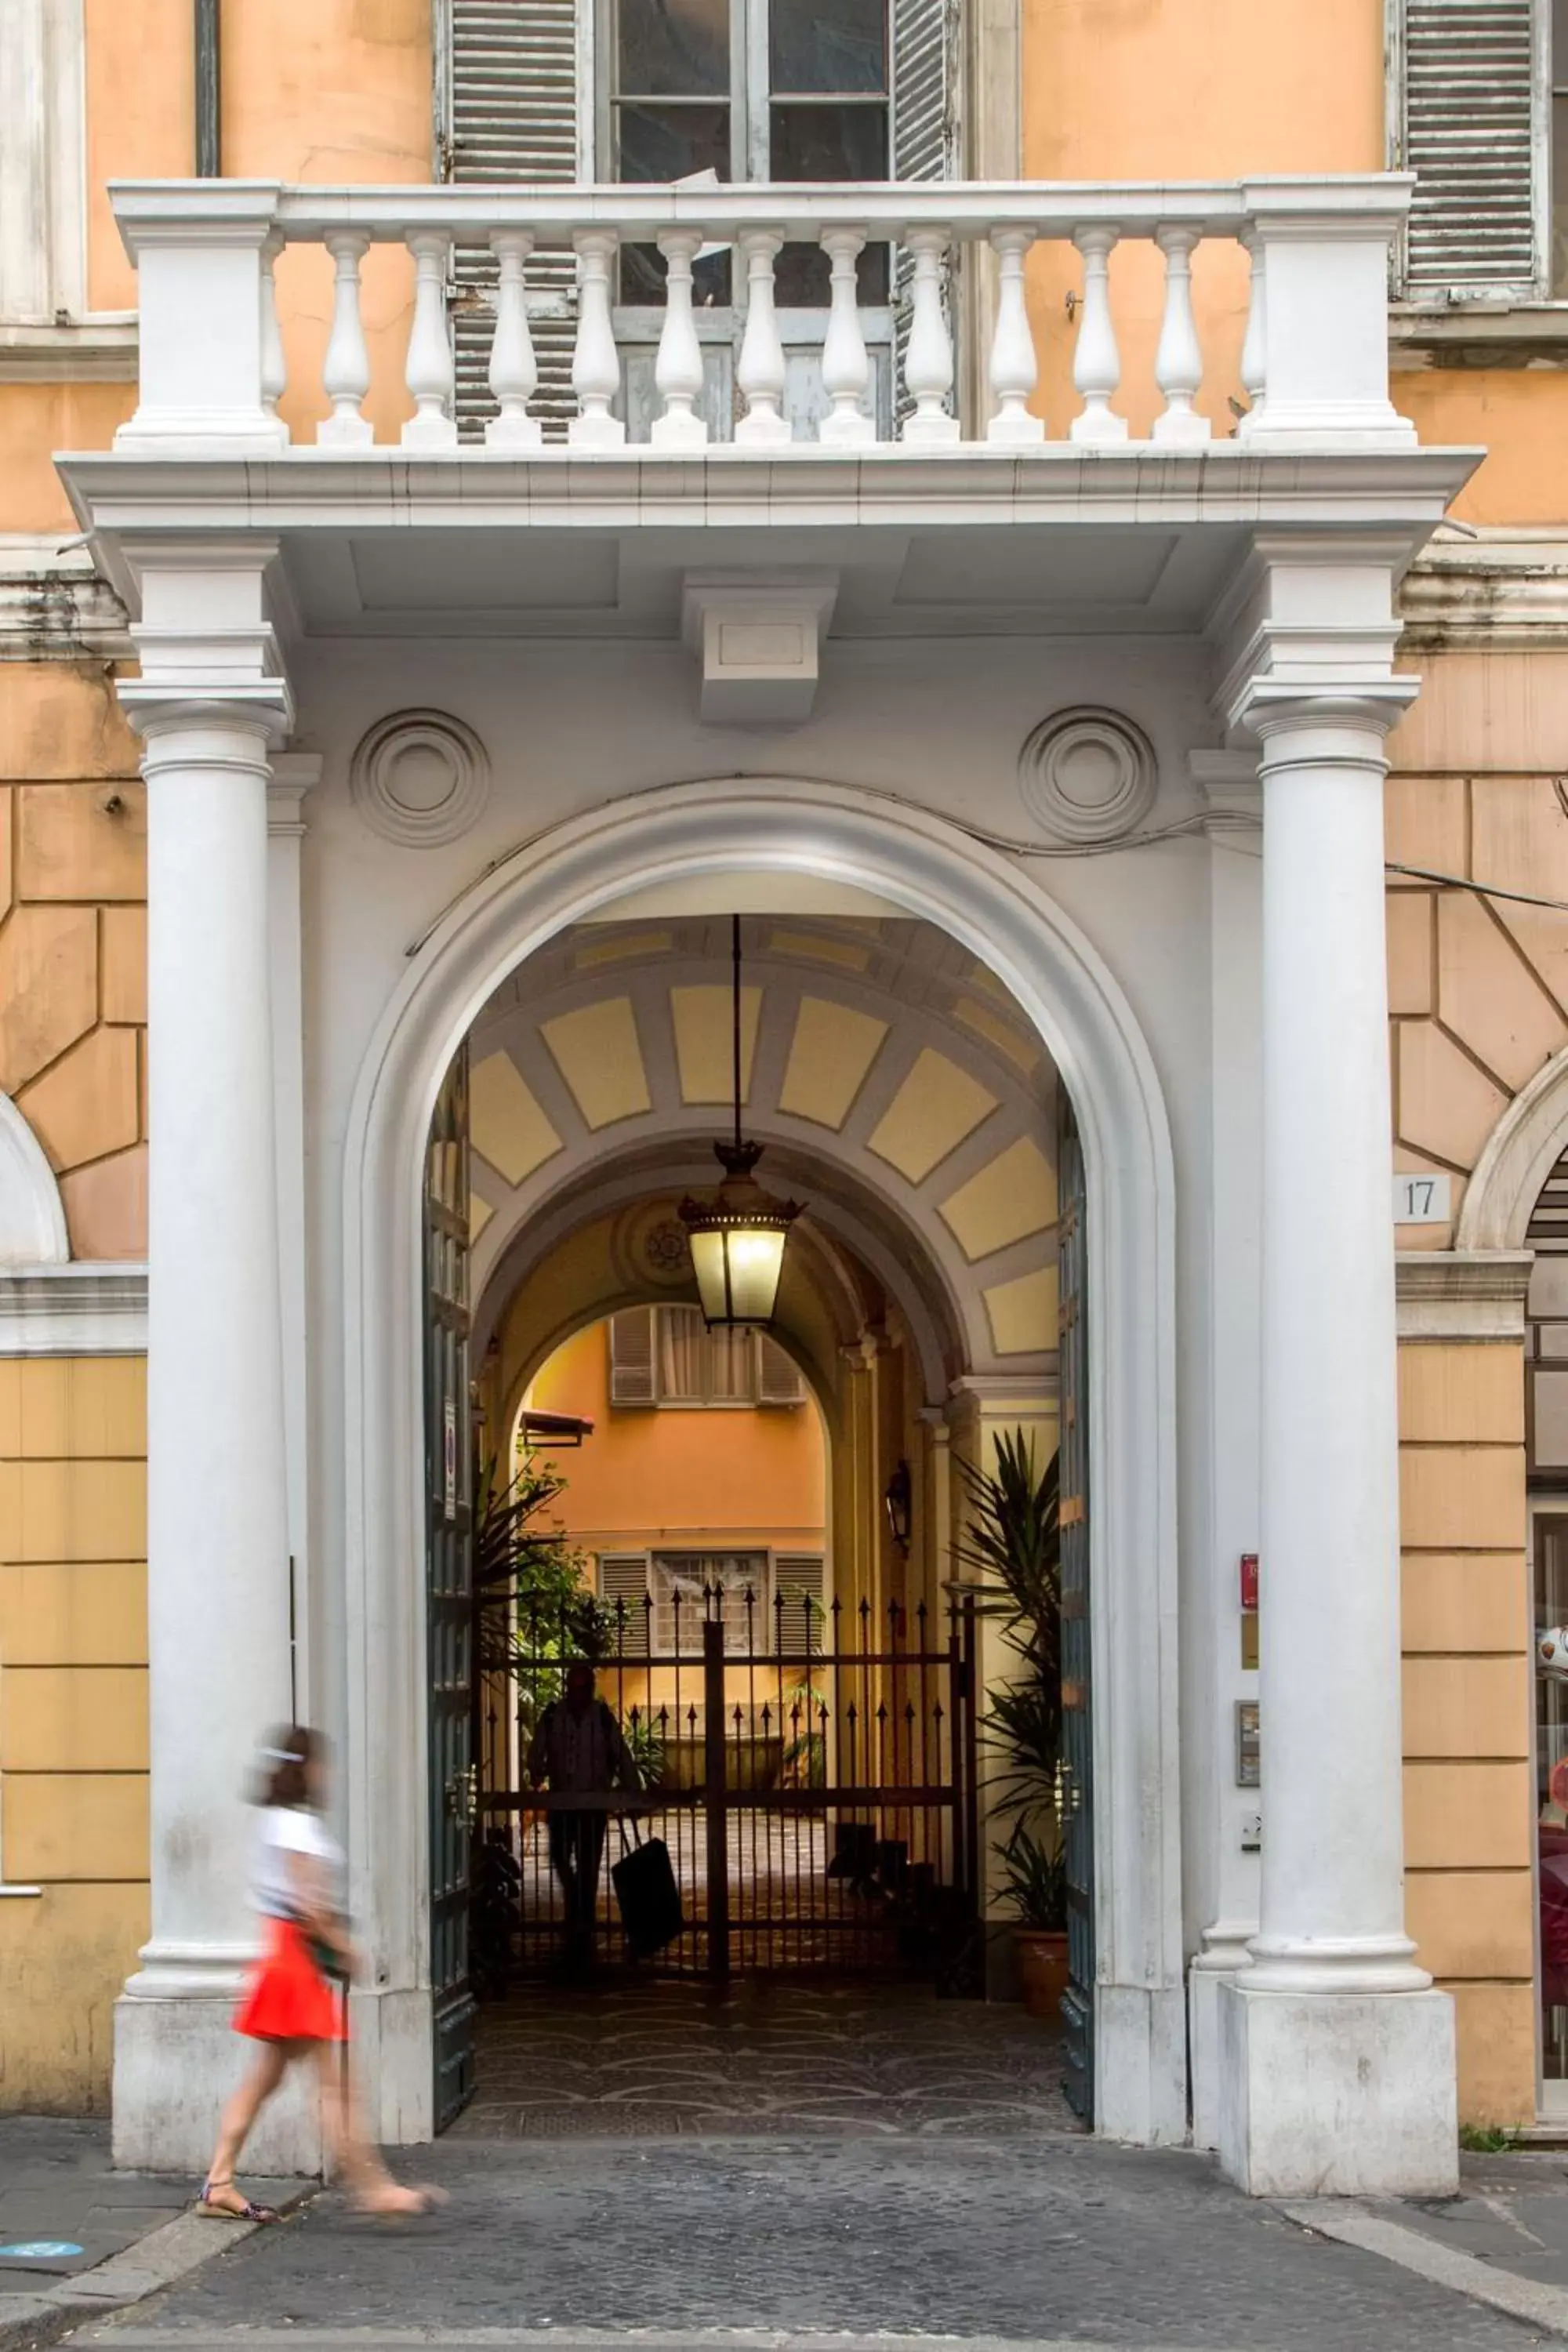 Property building, Facade/Entrance in Domus Liberius - Rome